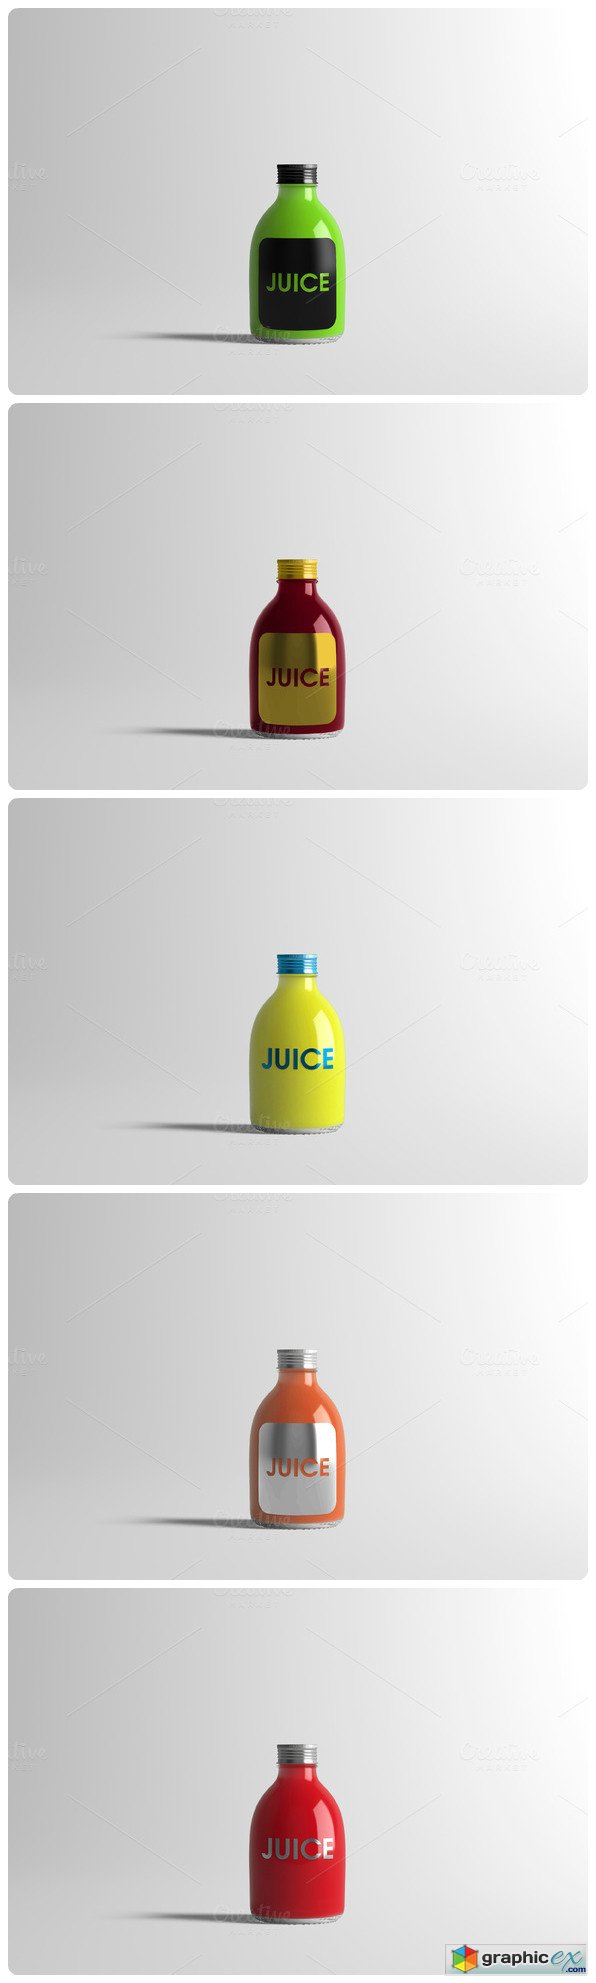 Juice Bottle Mock-Up 